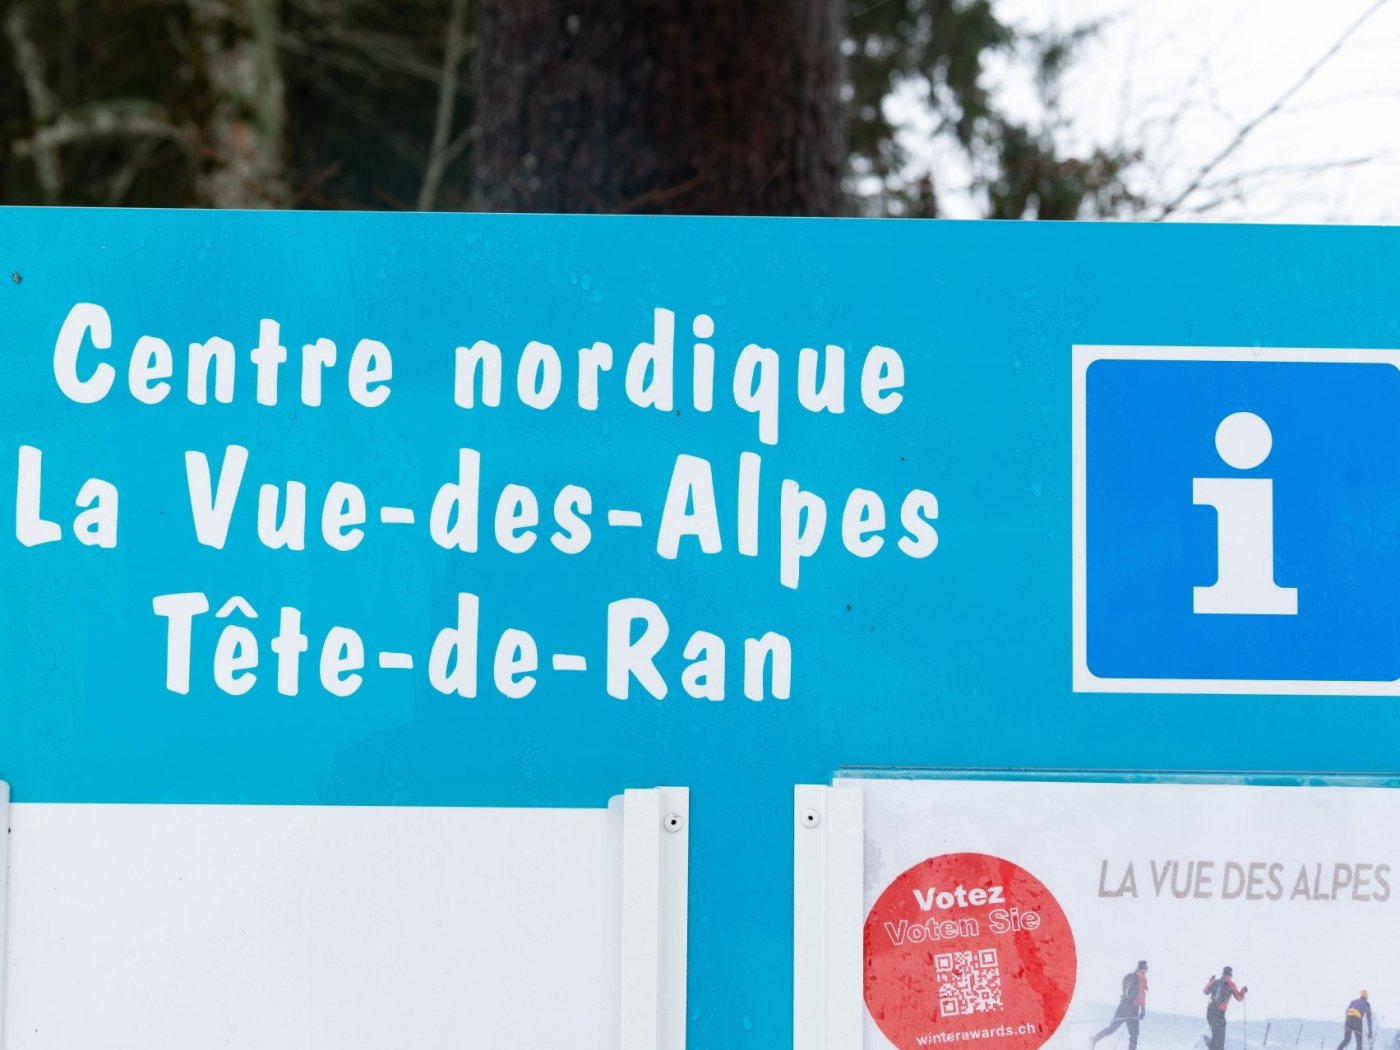 Le Centre nordique de La Vue-des-Alpes est menacé par la construction prévue de sept éoliennes au Crêt-Meuron.